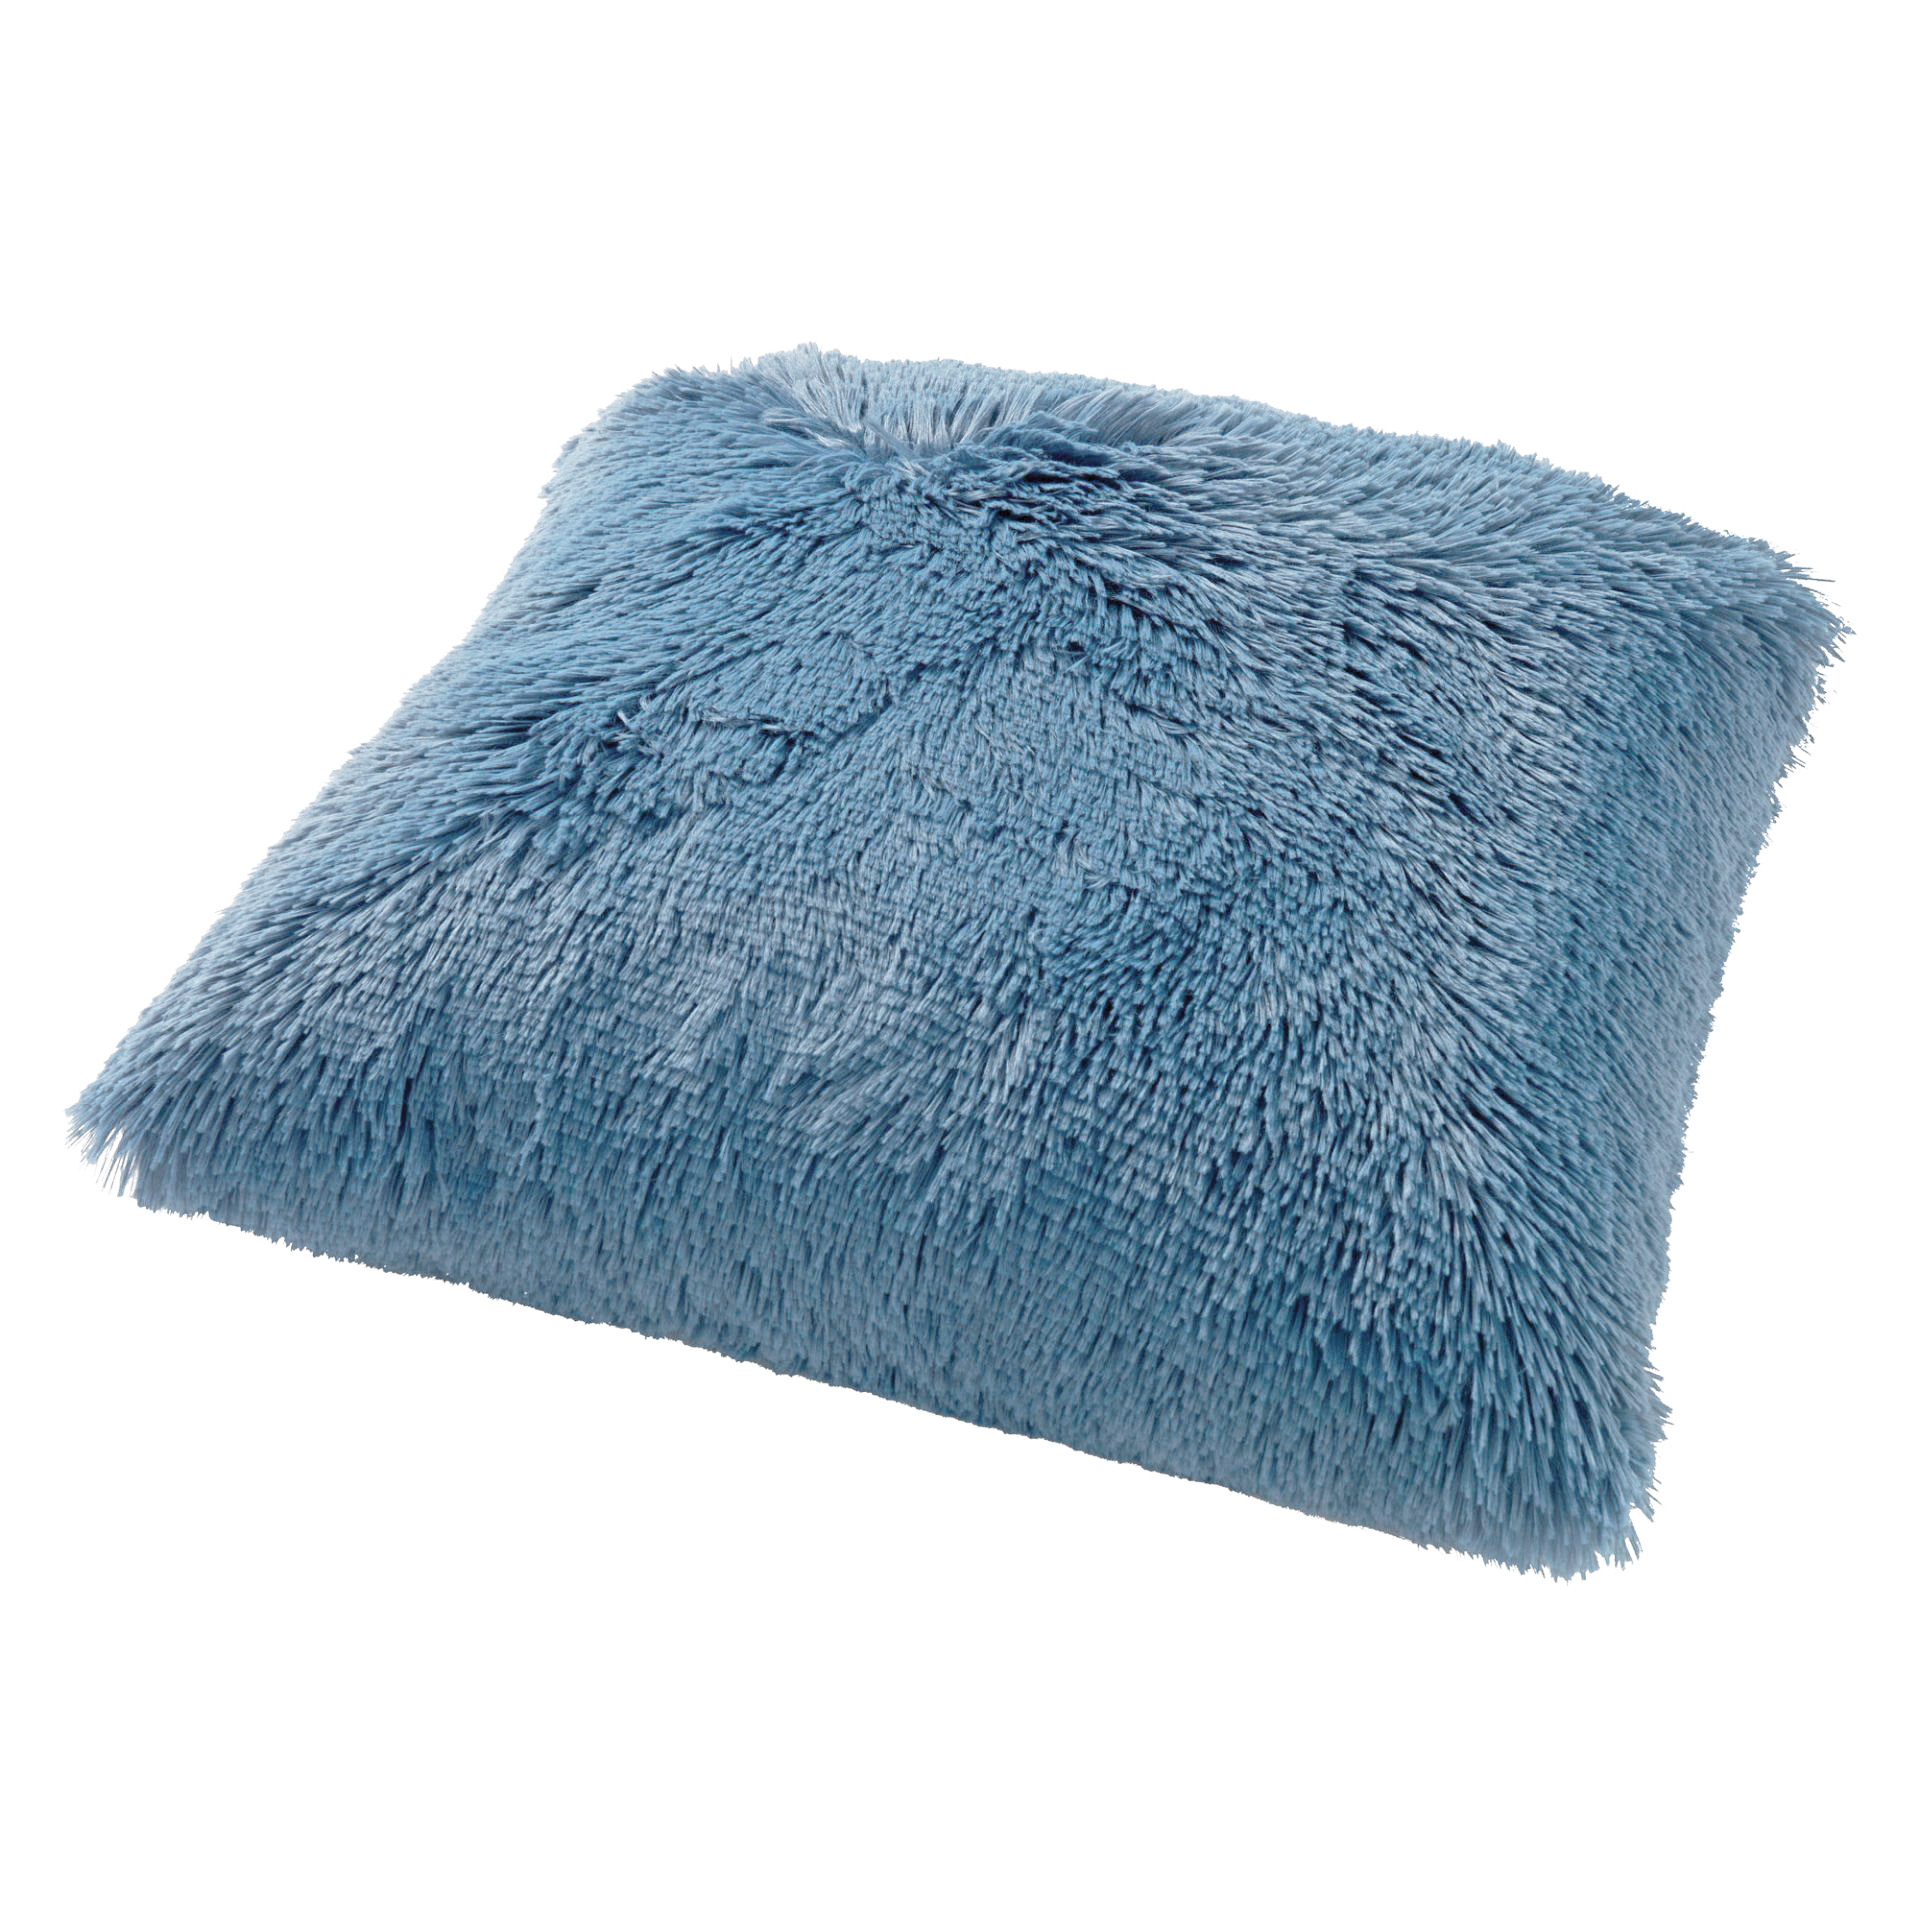 FLUFFY - Cushion 60x60 cm - Provincial Blue - blue